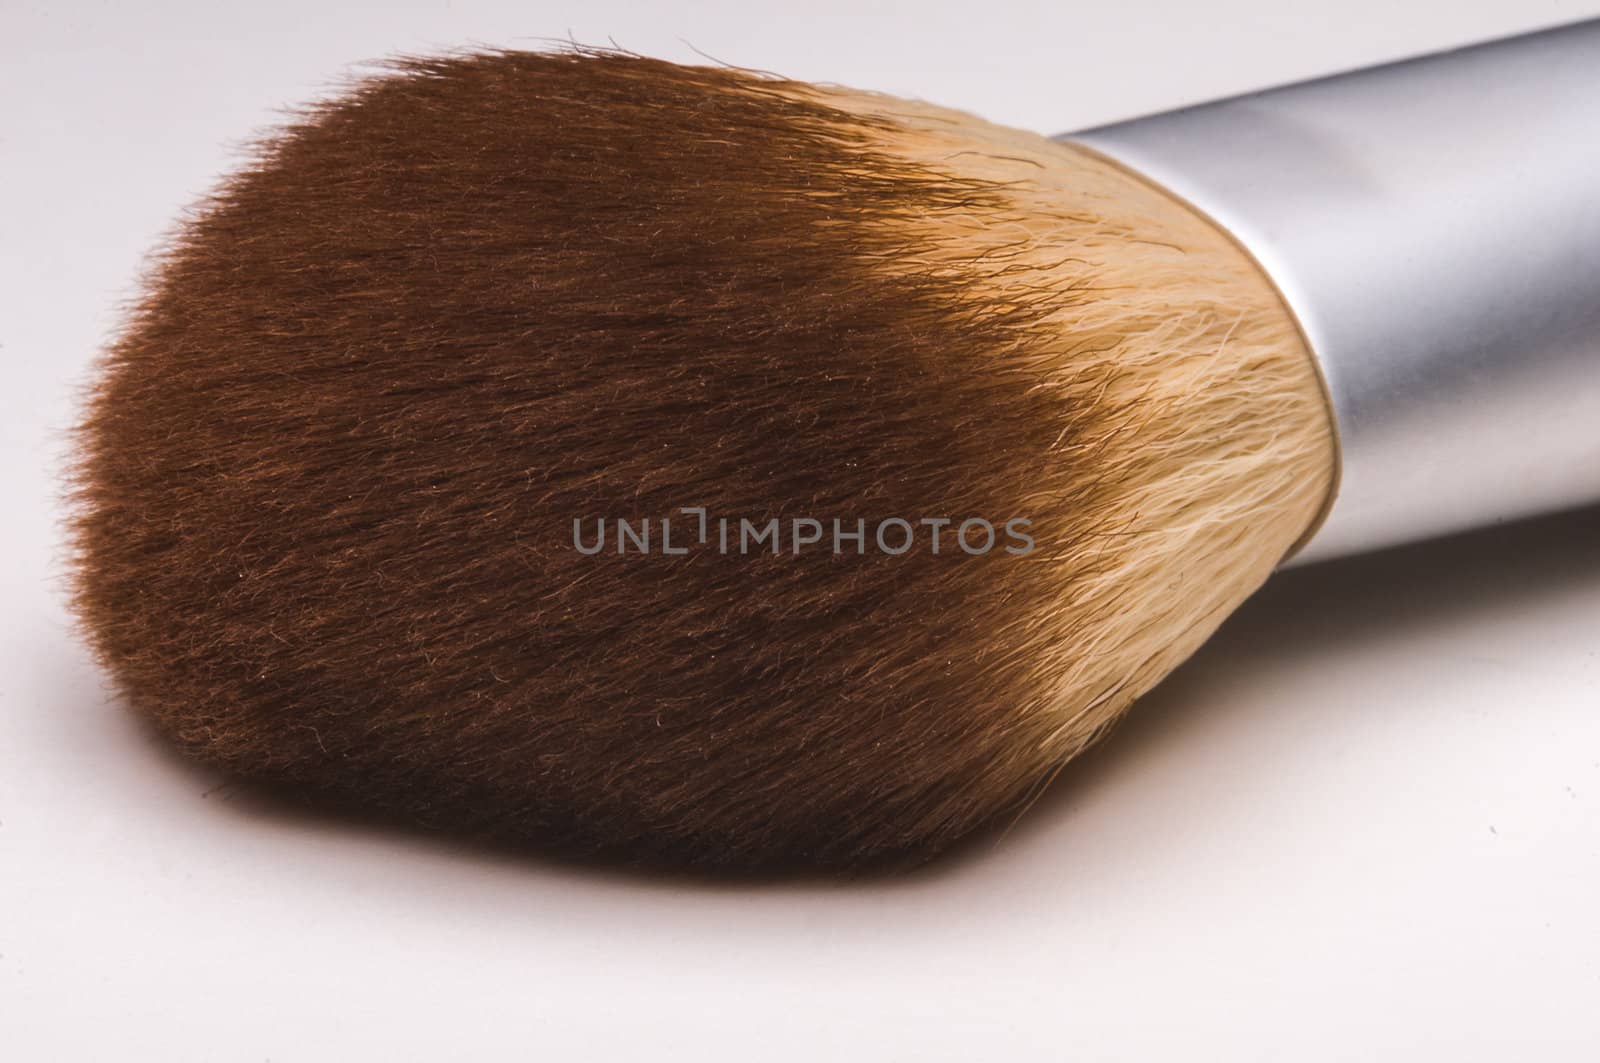 Make-up brush close up on white background.